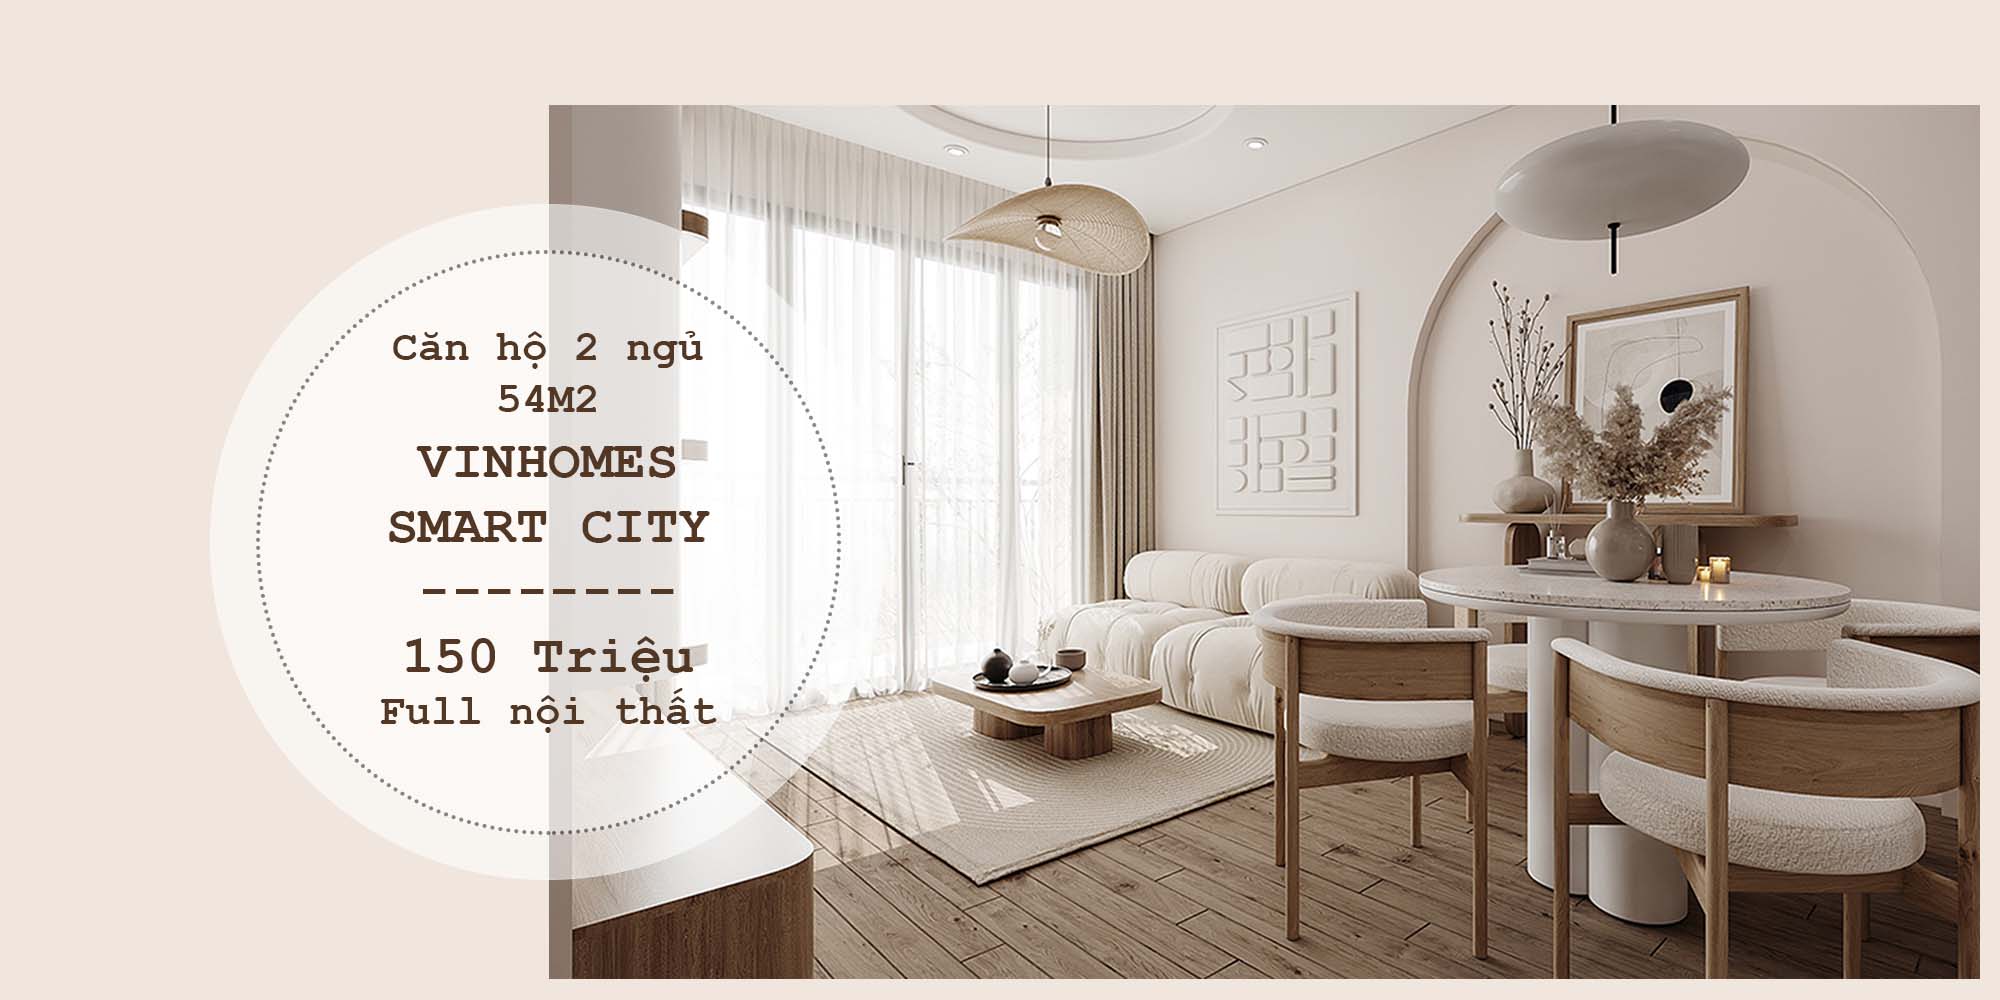 Thiết kế thi công chung cư Vinhomes Smart City 150 Triệu Full nội thất